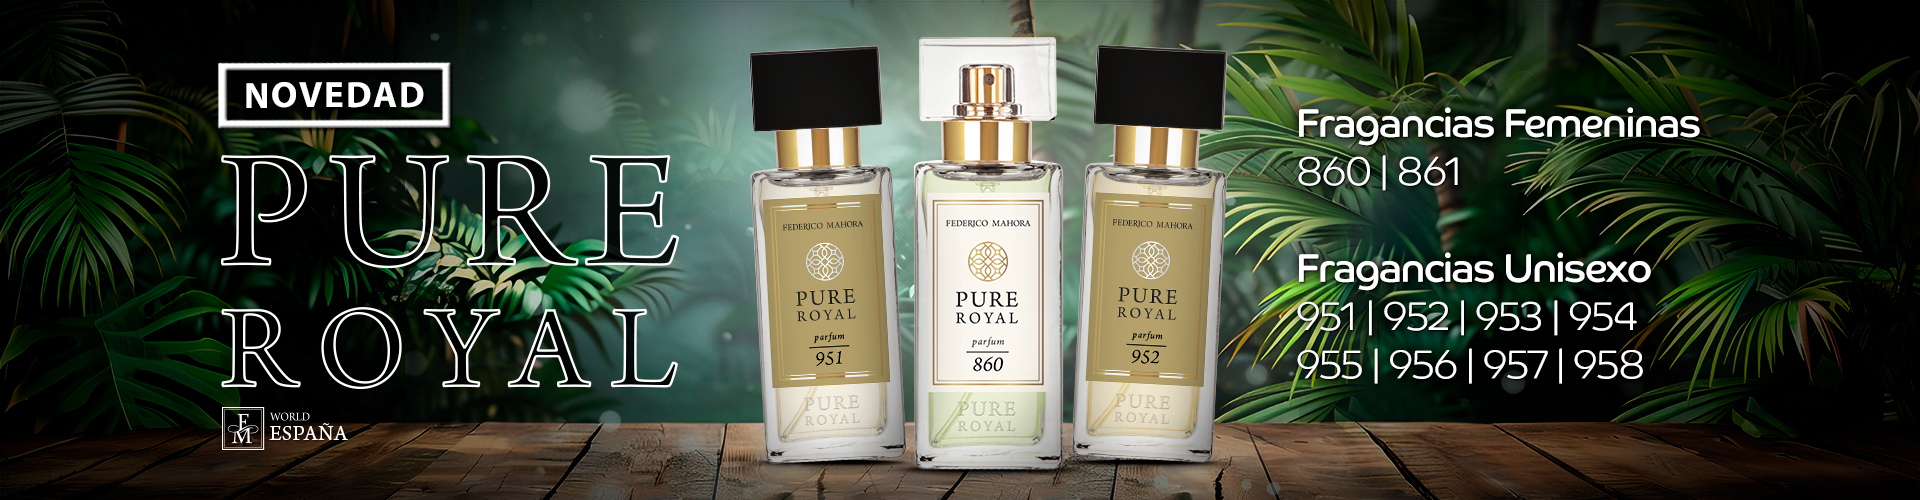 Novidades Cat40 - Perfumes Pure Royal